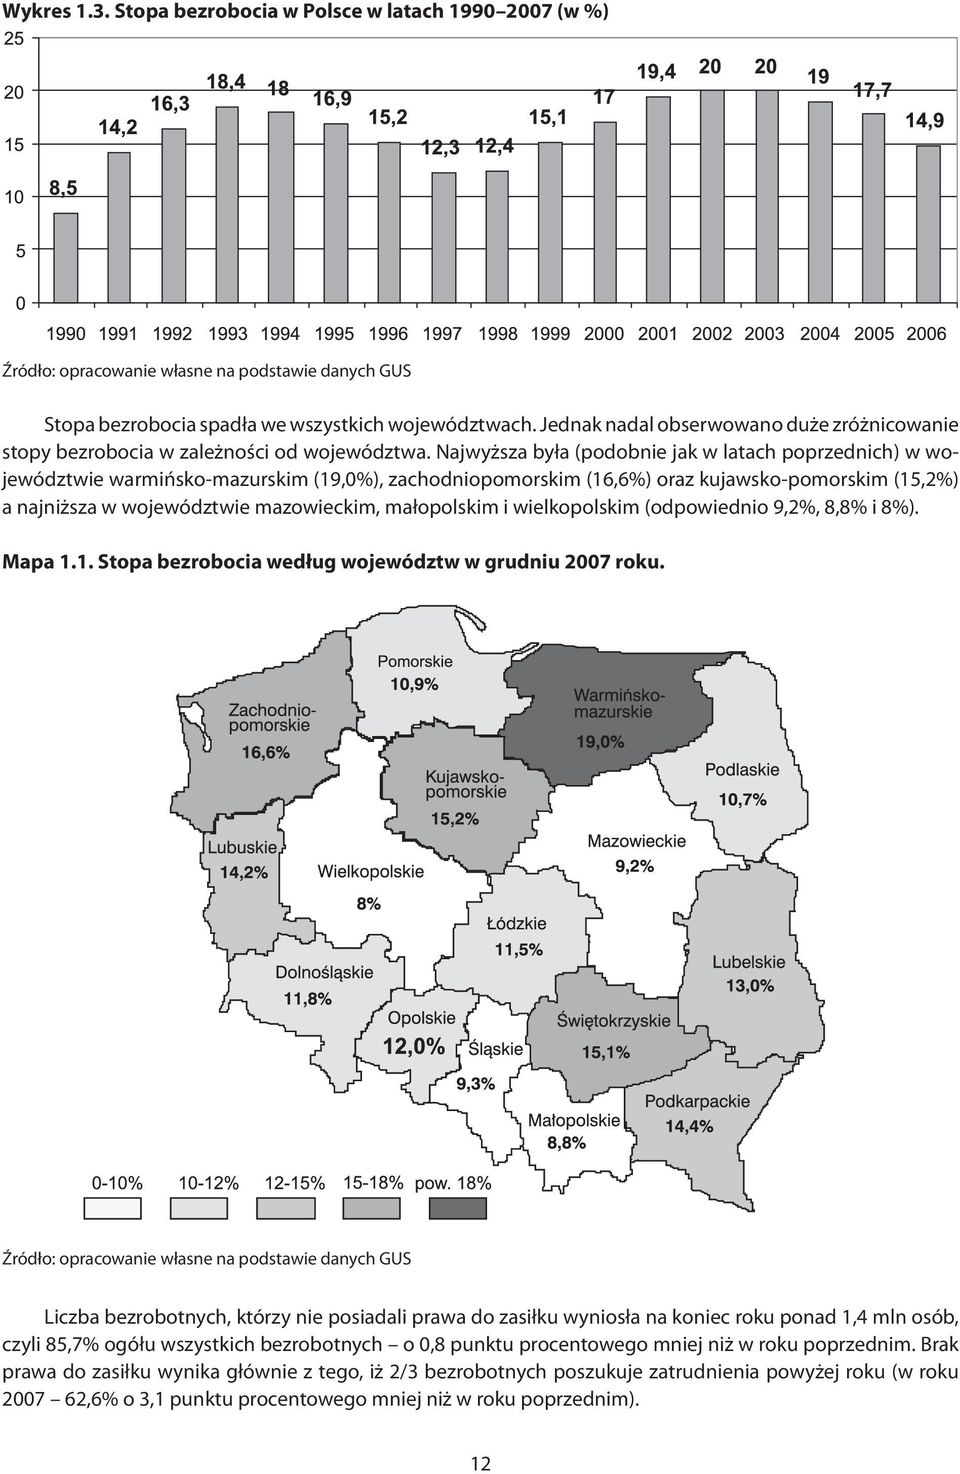 Najwyższa była (podobnie jak w latach poprzednich) w województwie warmińsko-mazurskim (19,0%), zachodniopomorskim (16,6%) oraz kujawsko-pomorskim (15,2%) a najniższa w województwie mazowieckim,